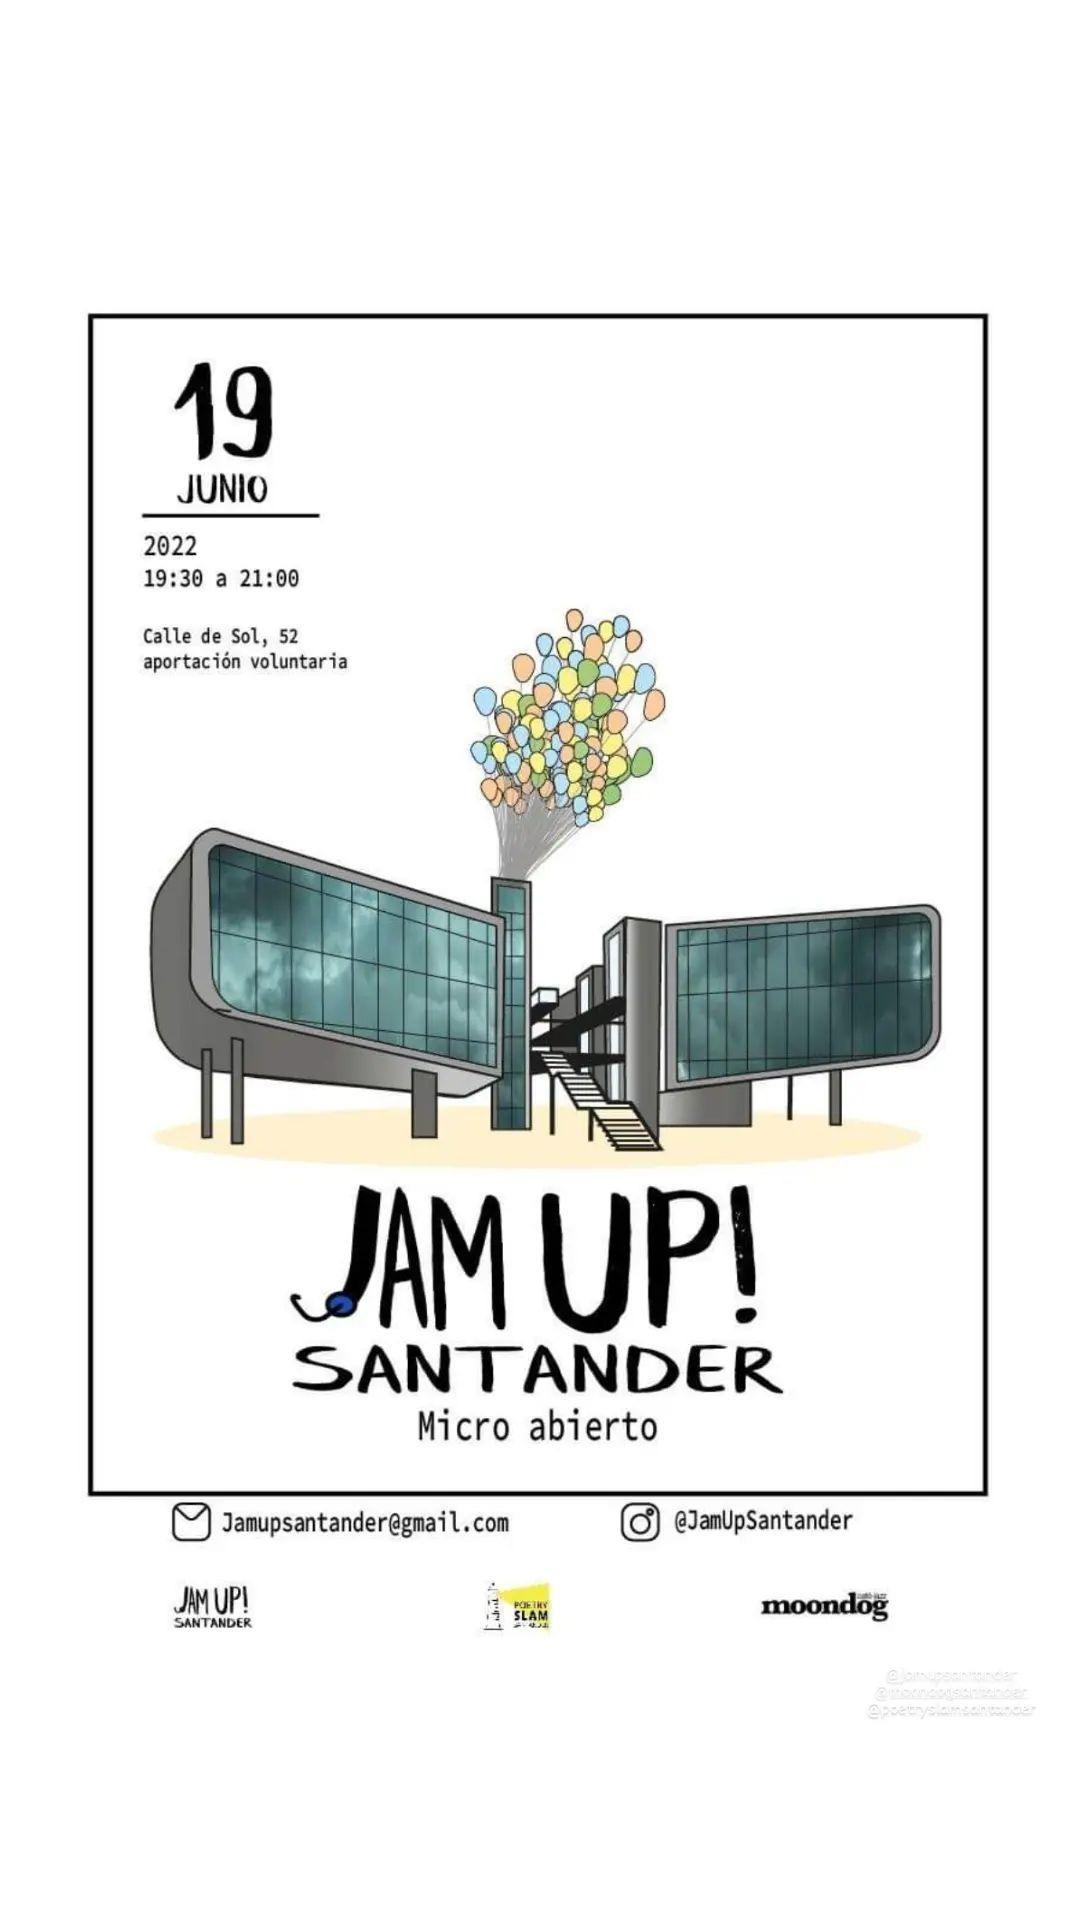 Jam Up! Micro abierto en Santander